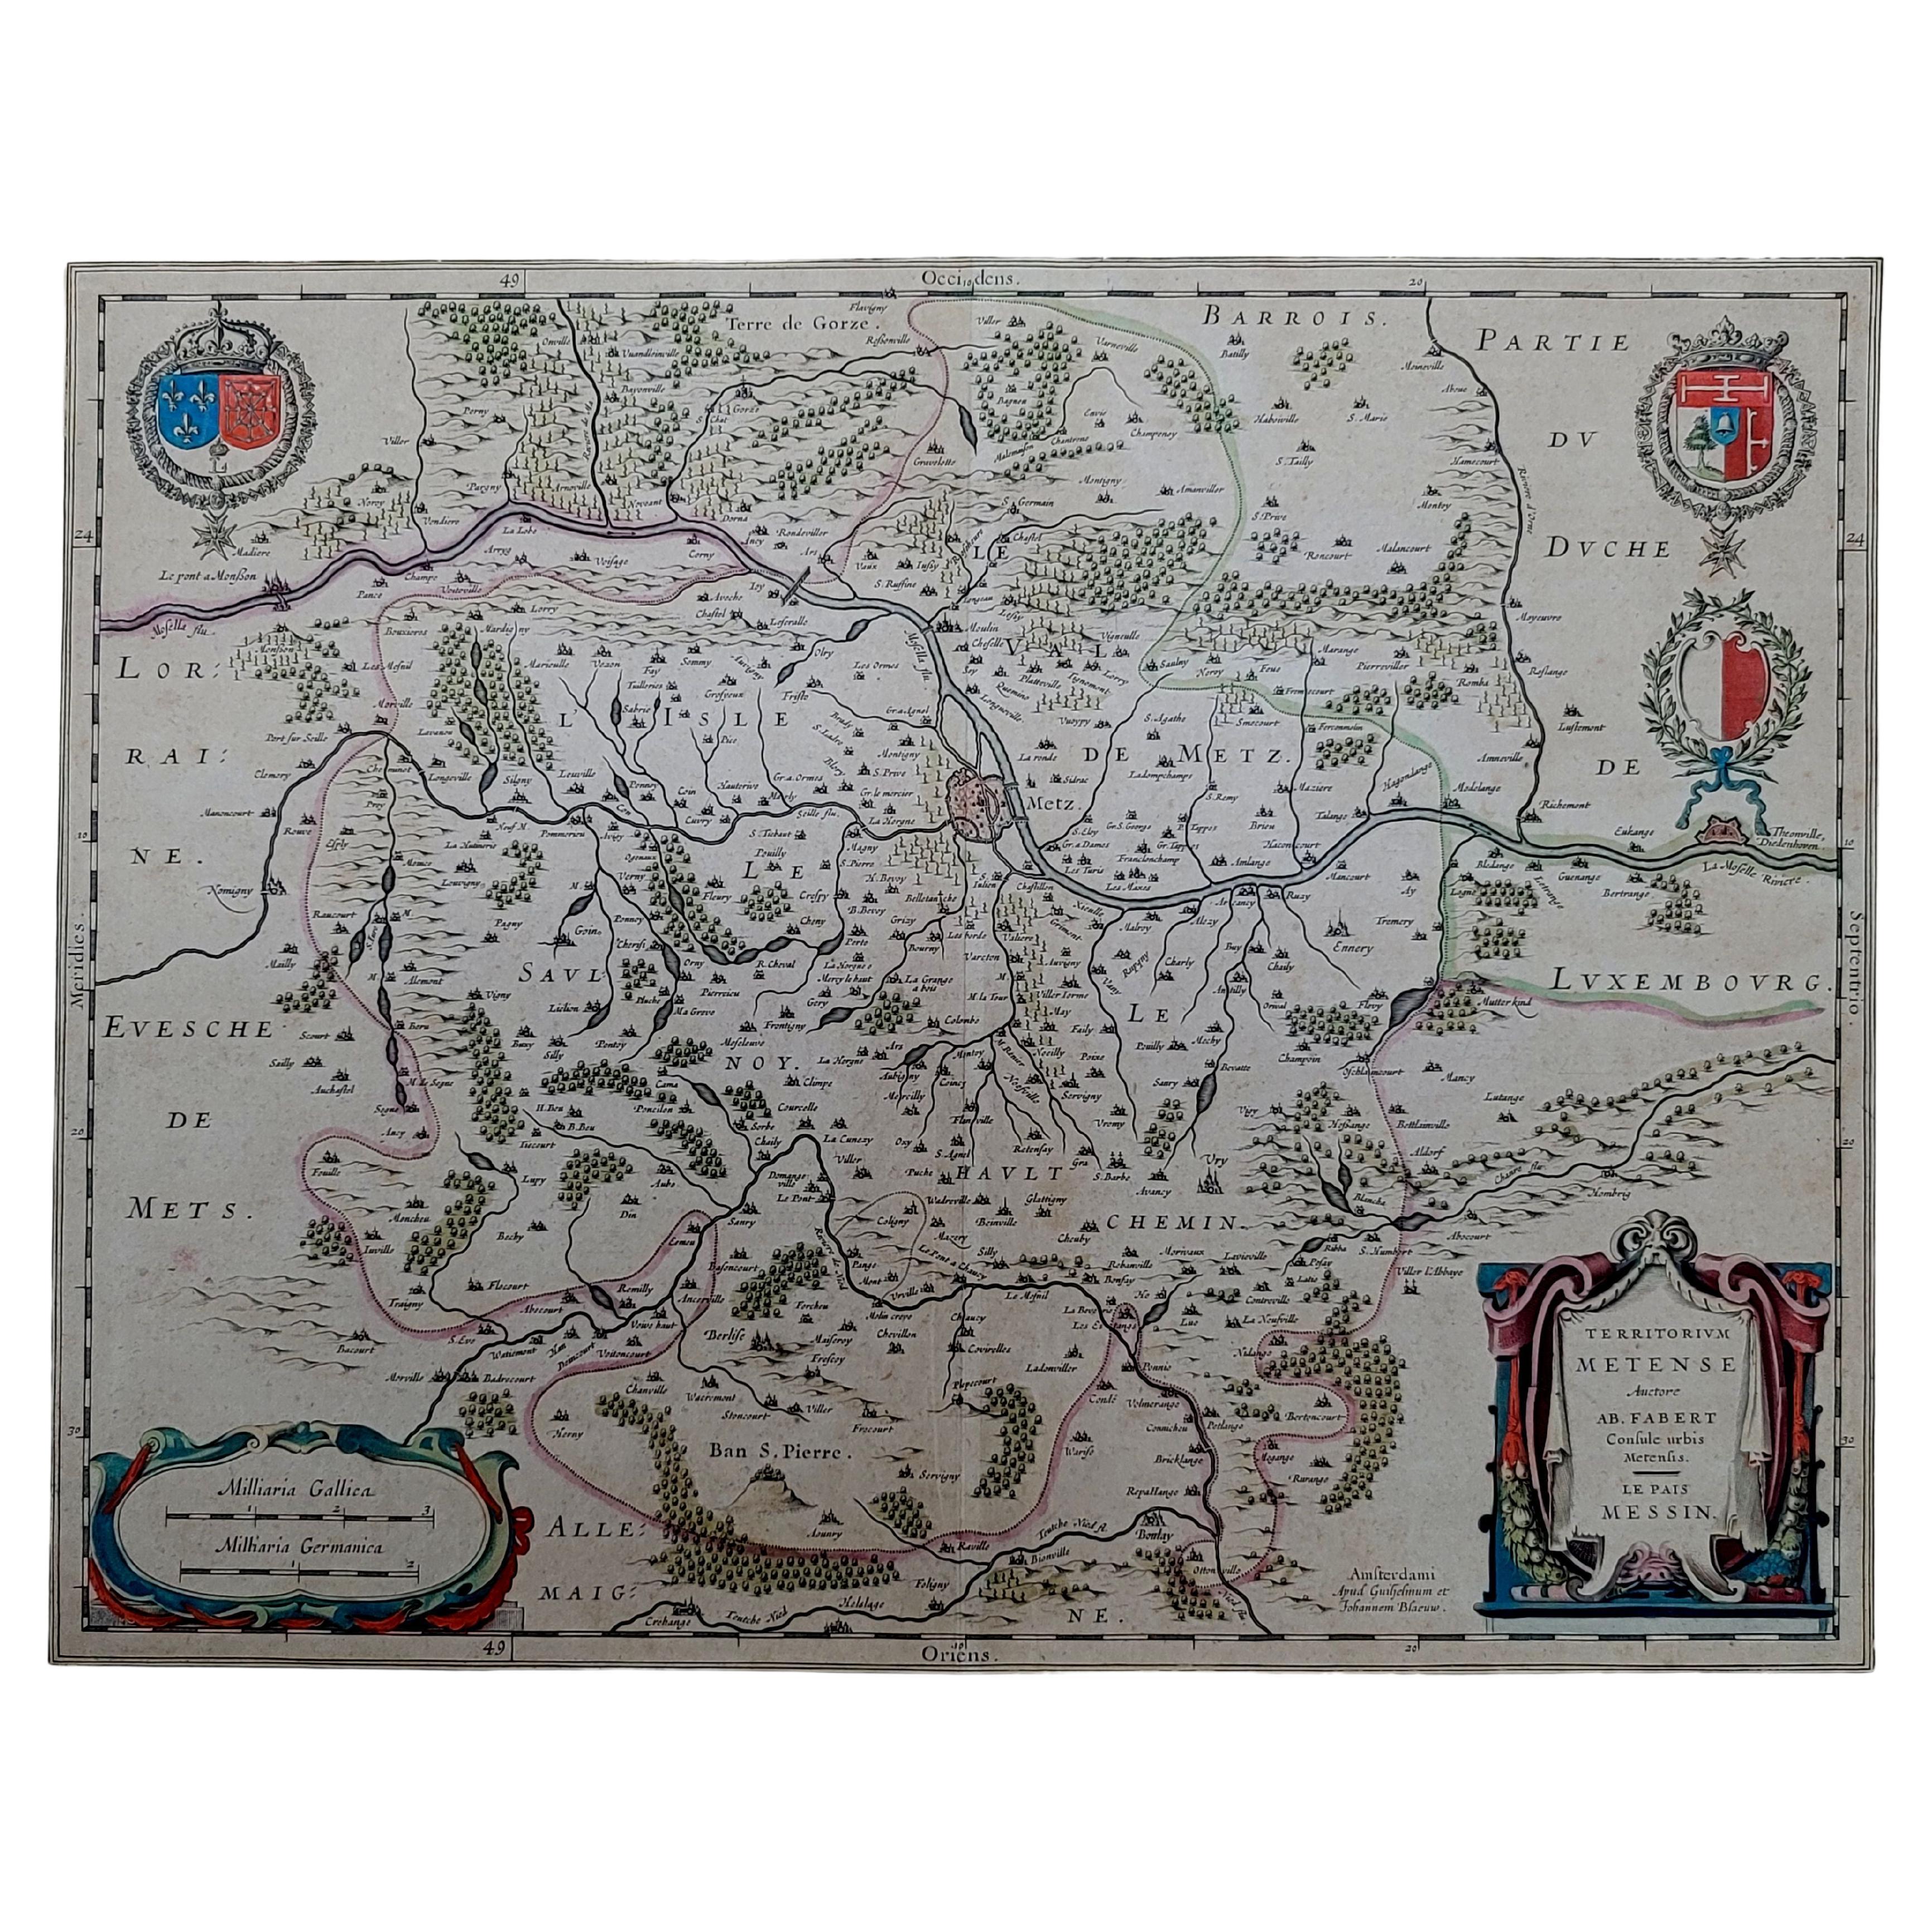 Carte de 1656 Jansson région de Metz intitulée "Territorium Metense" Ric0014